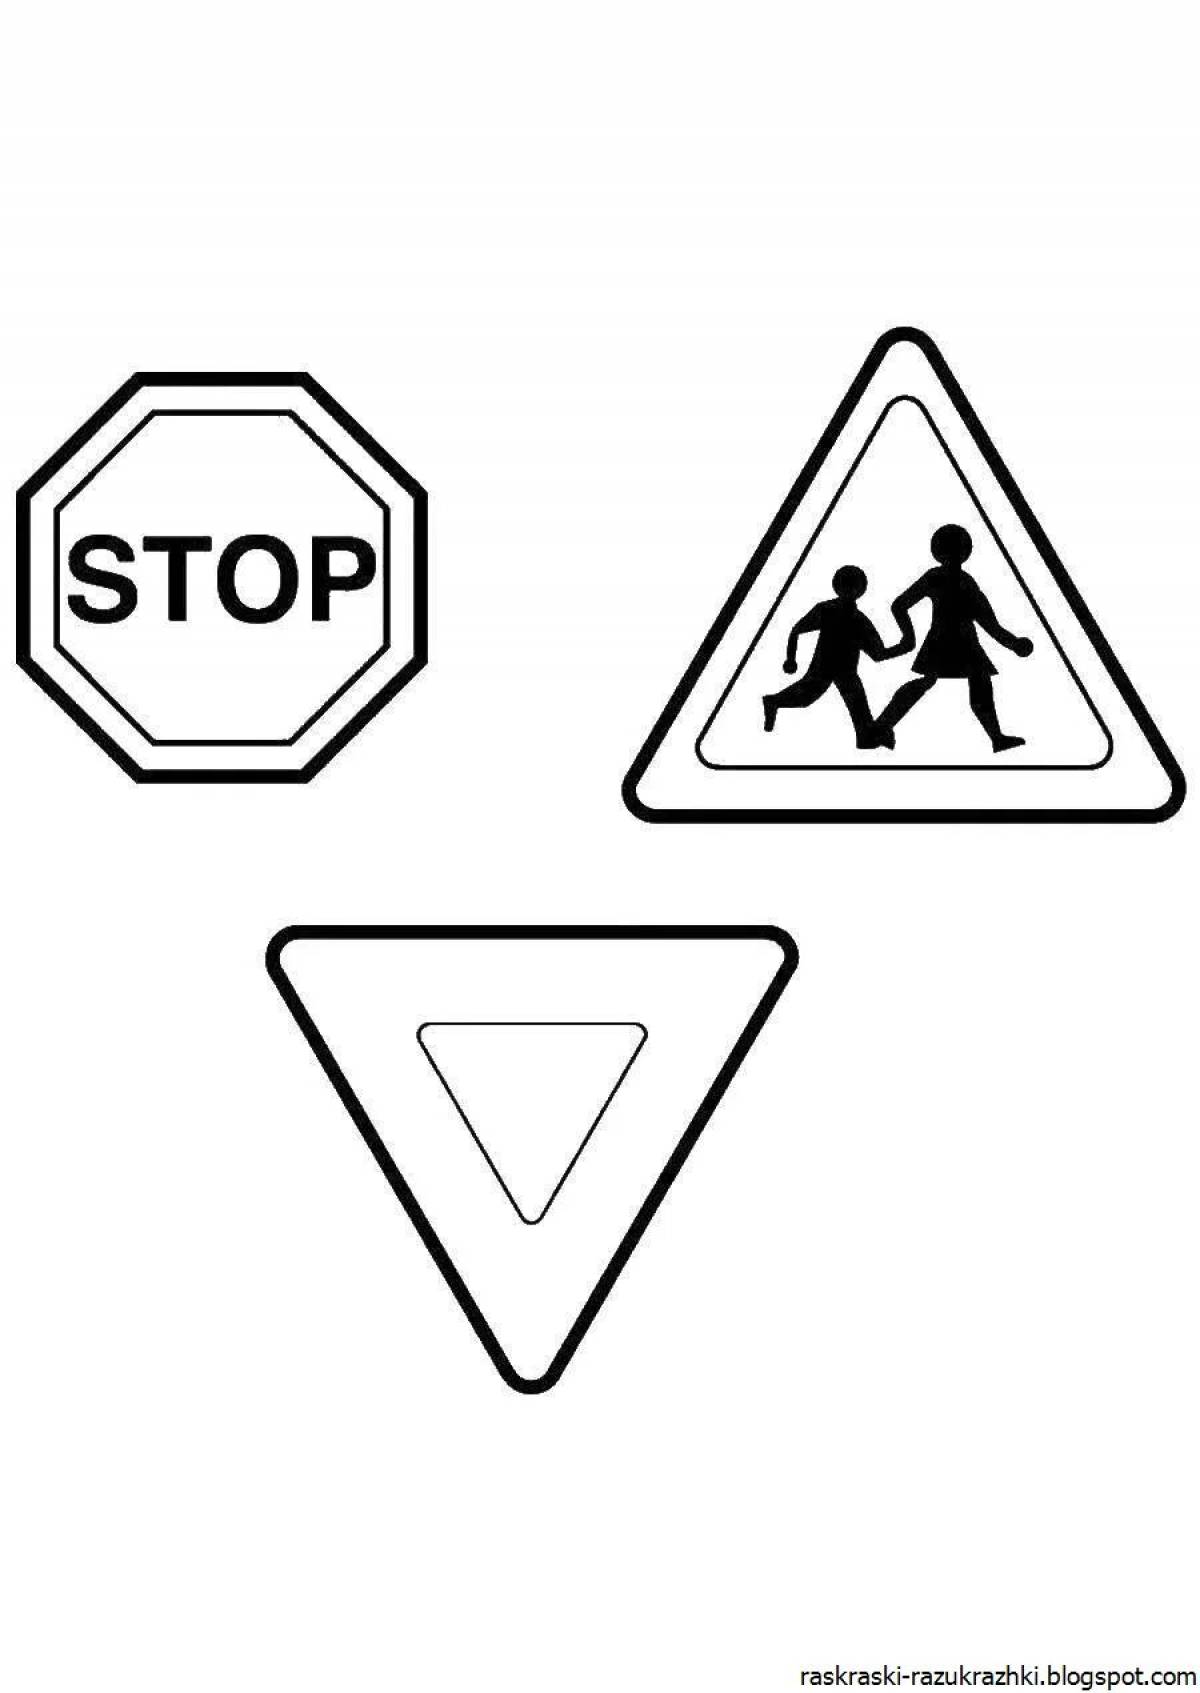 Креативная раскраска дорожных знаков для детей